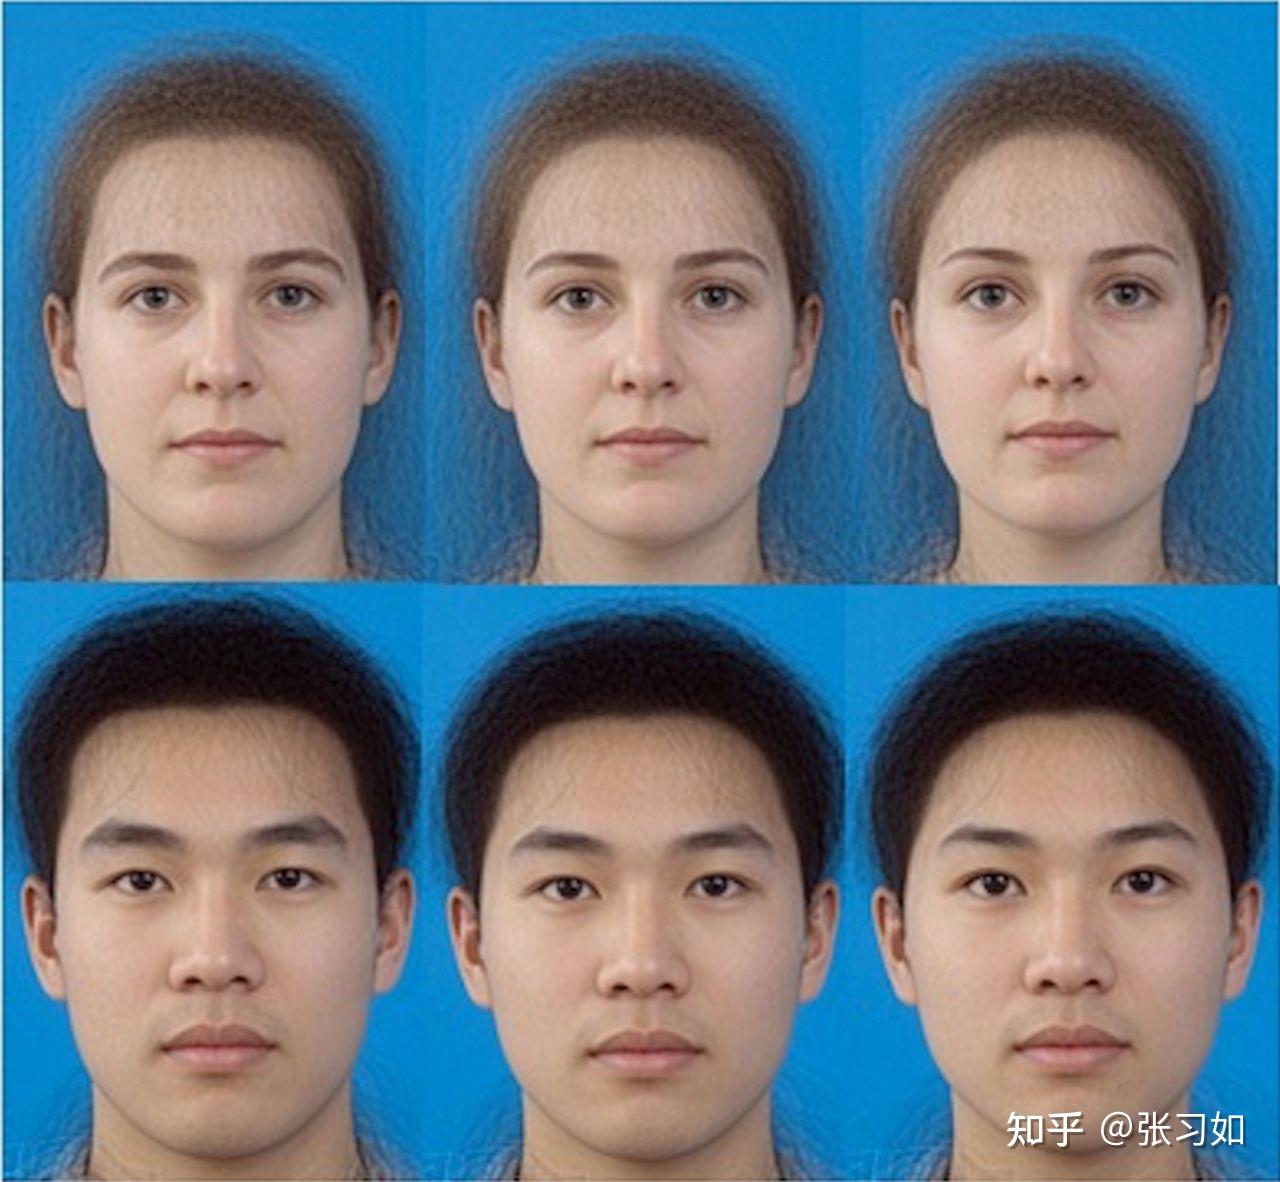 男性面部女性化图片